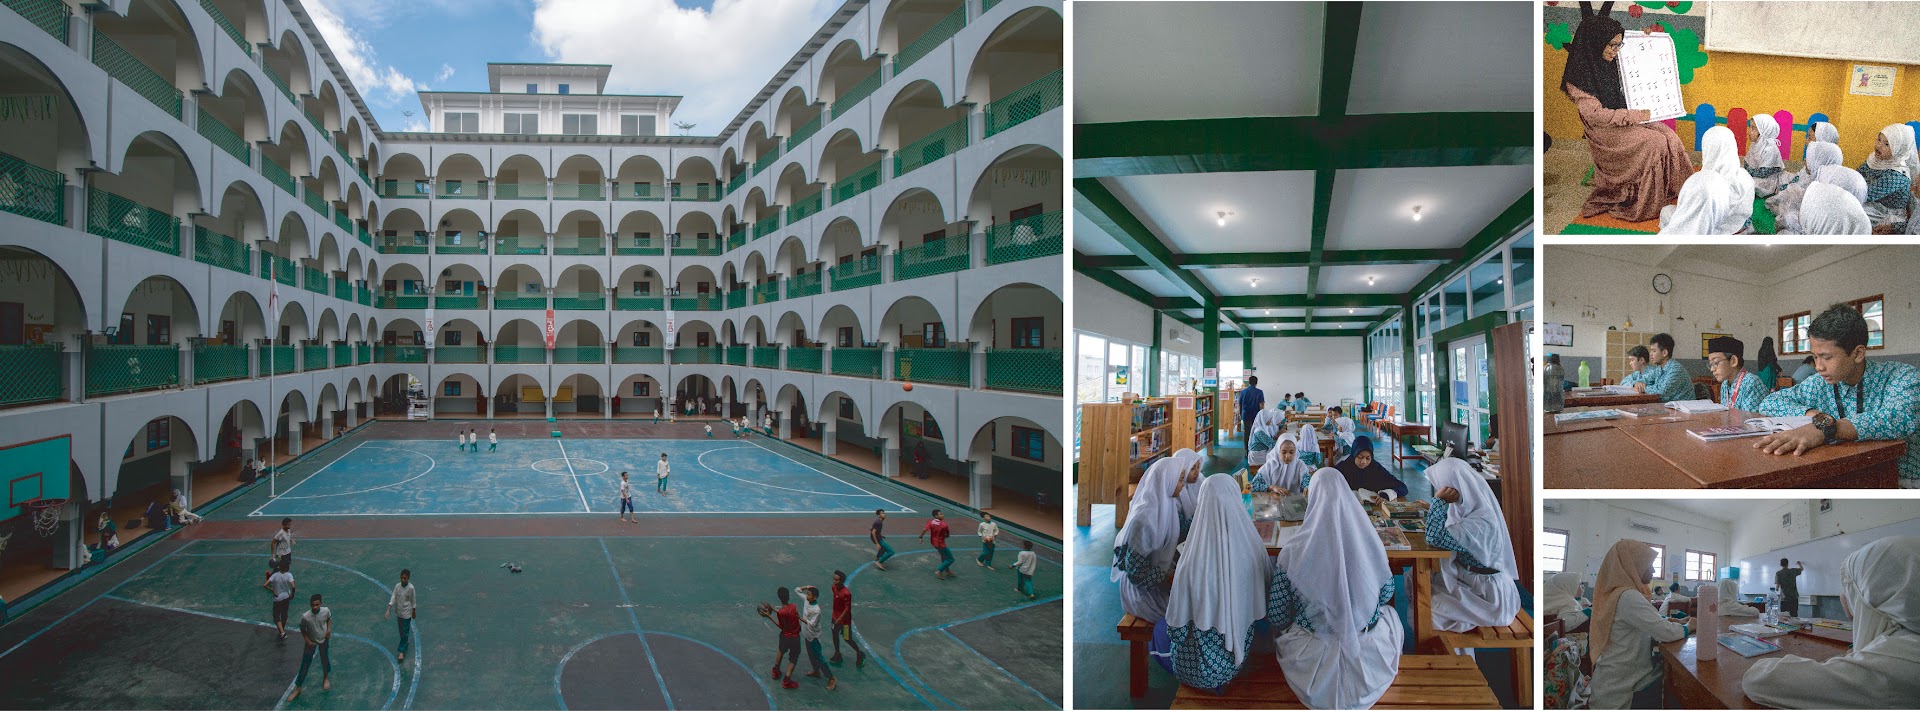 Perguruan Islam Al-amjad Photo